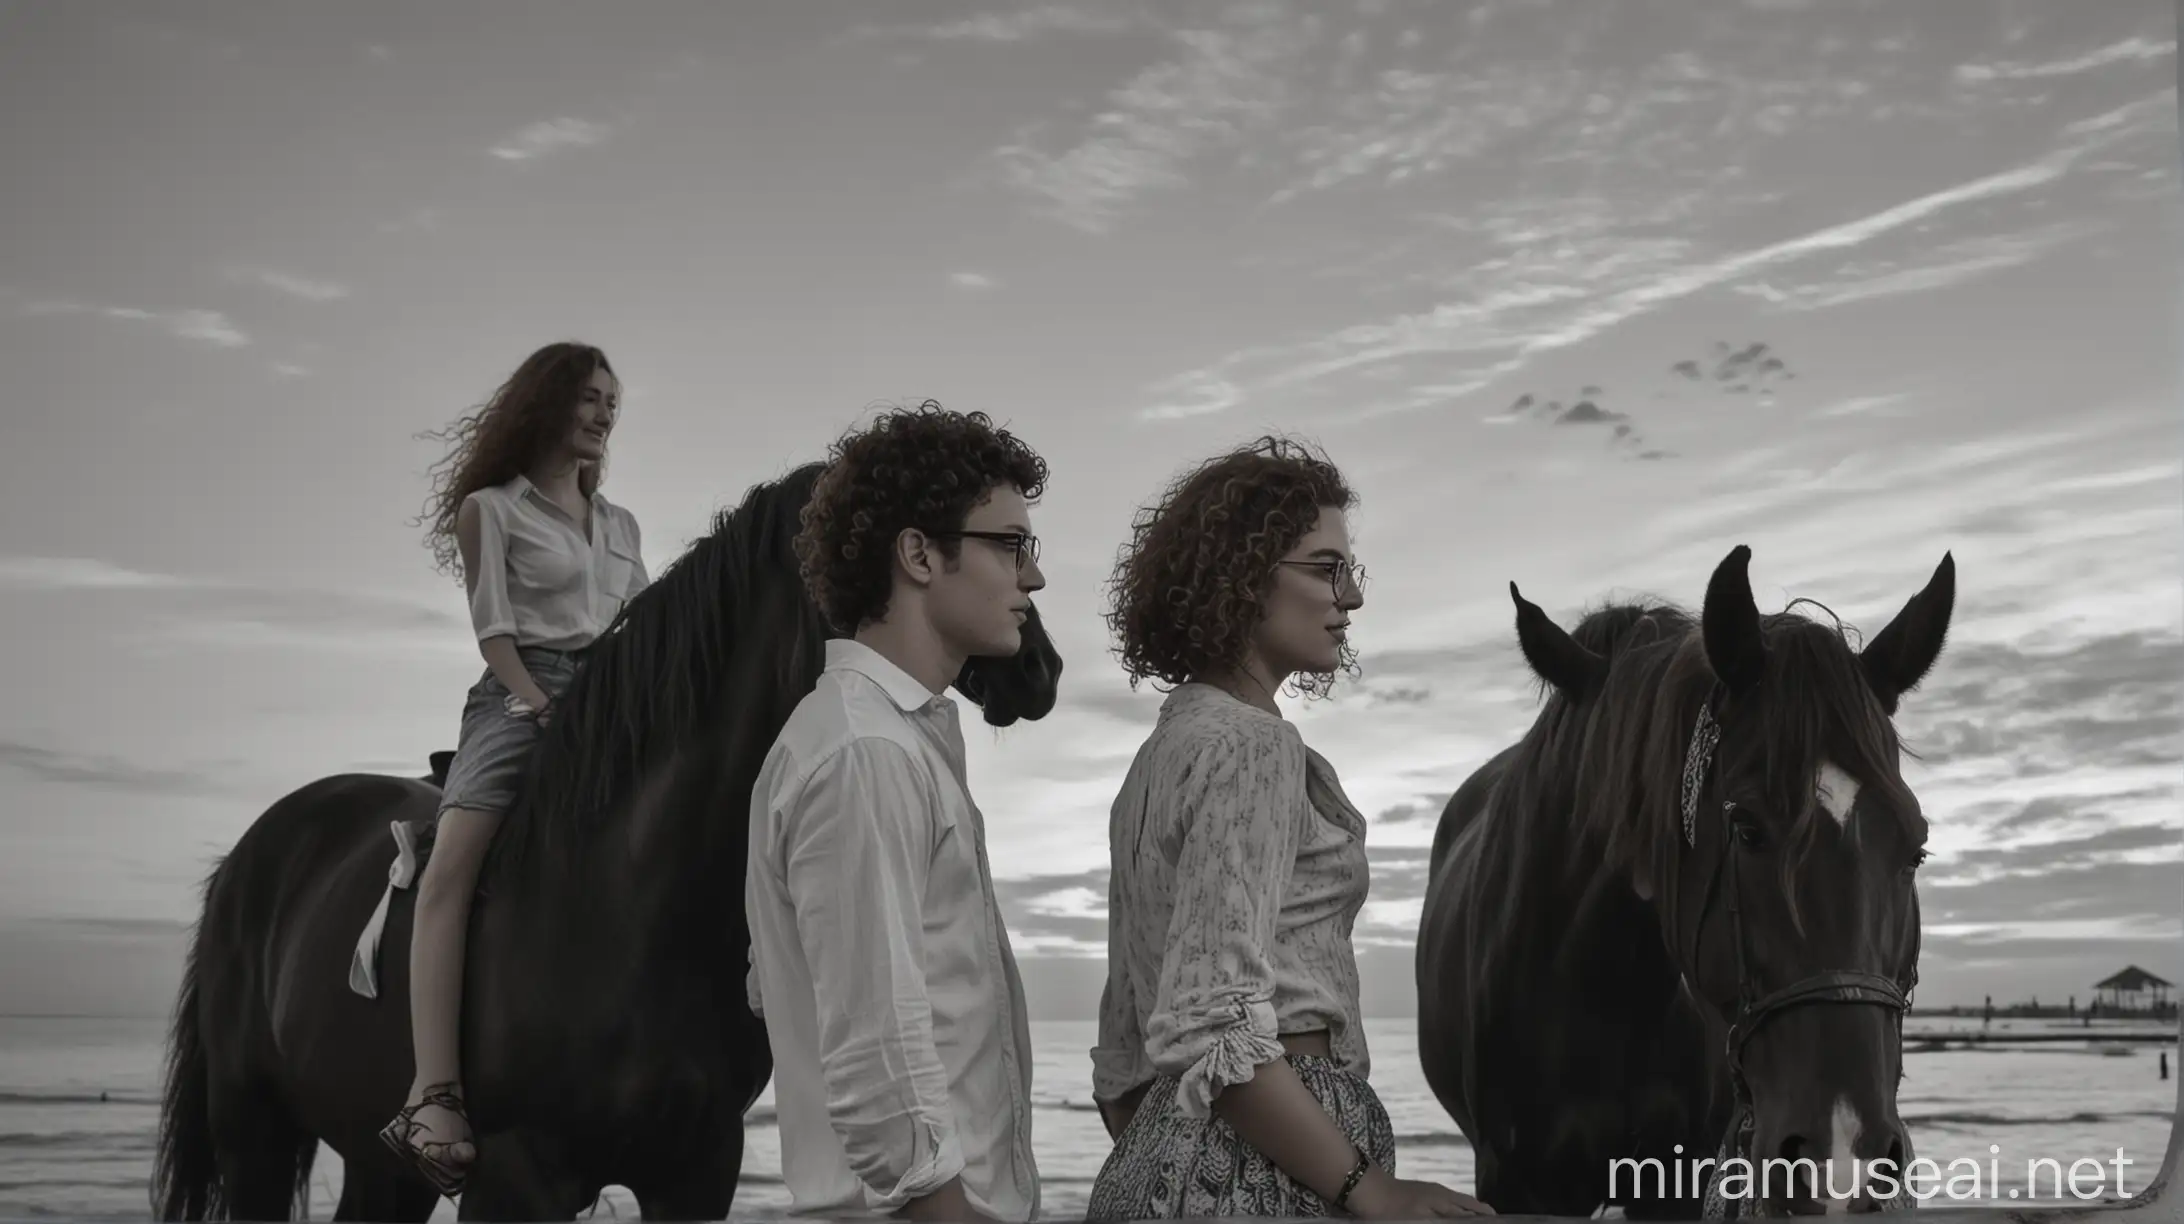 Νεαρός άνδρας με κοντό μαλλί με μπούκλες πάνω σε ψηλό μαύρο άλογο δίπλα του νεαρή γυναίκα με κάστανα μακριά σπαστά μαλλιά πάνω σε ψηλό άσπρο άλογο κοιτάζουν μαζί το ηλιοβασίλεμα σε μια εξωτική παραλία